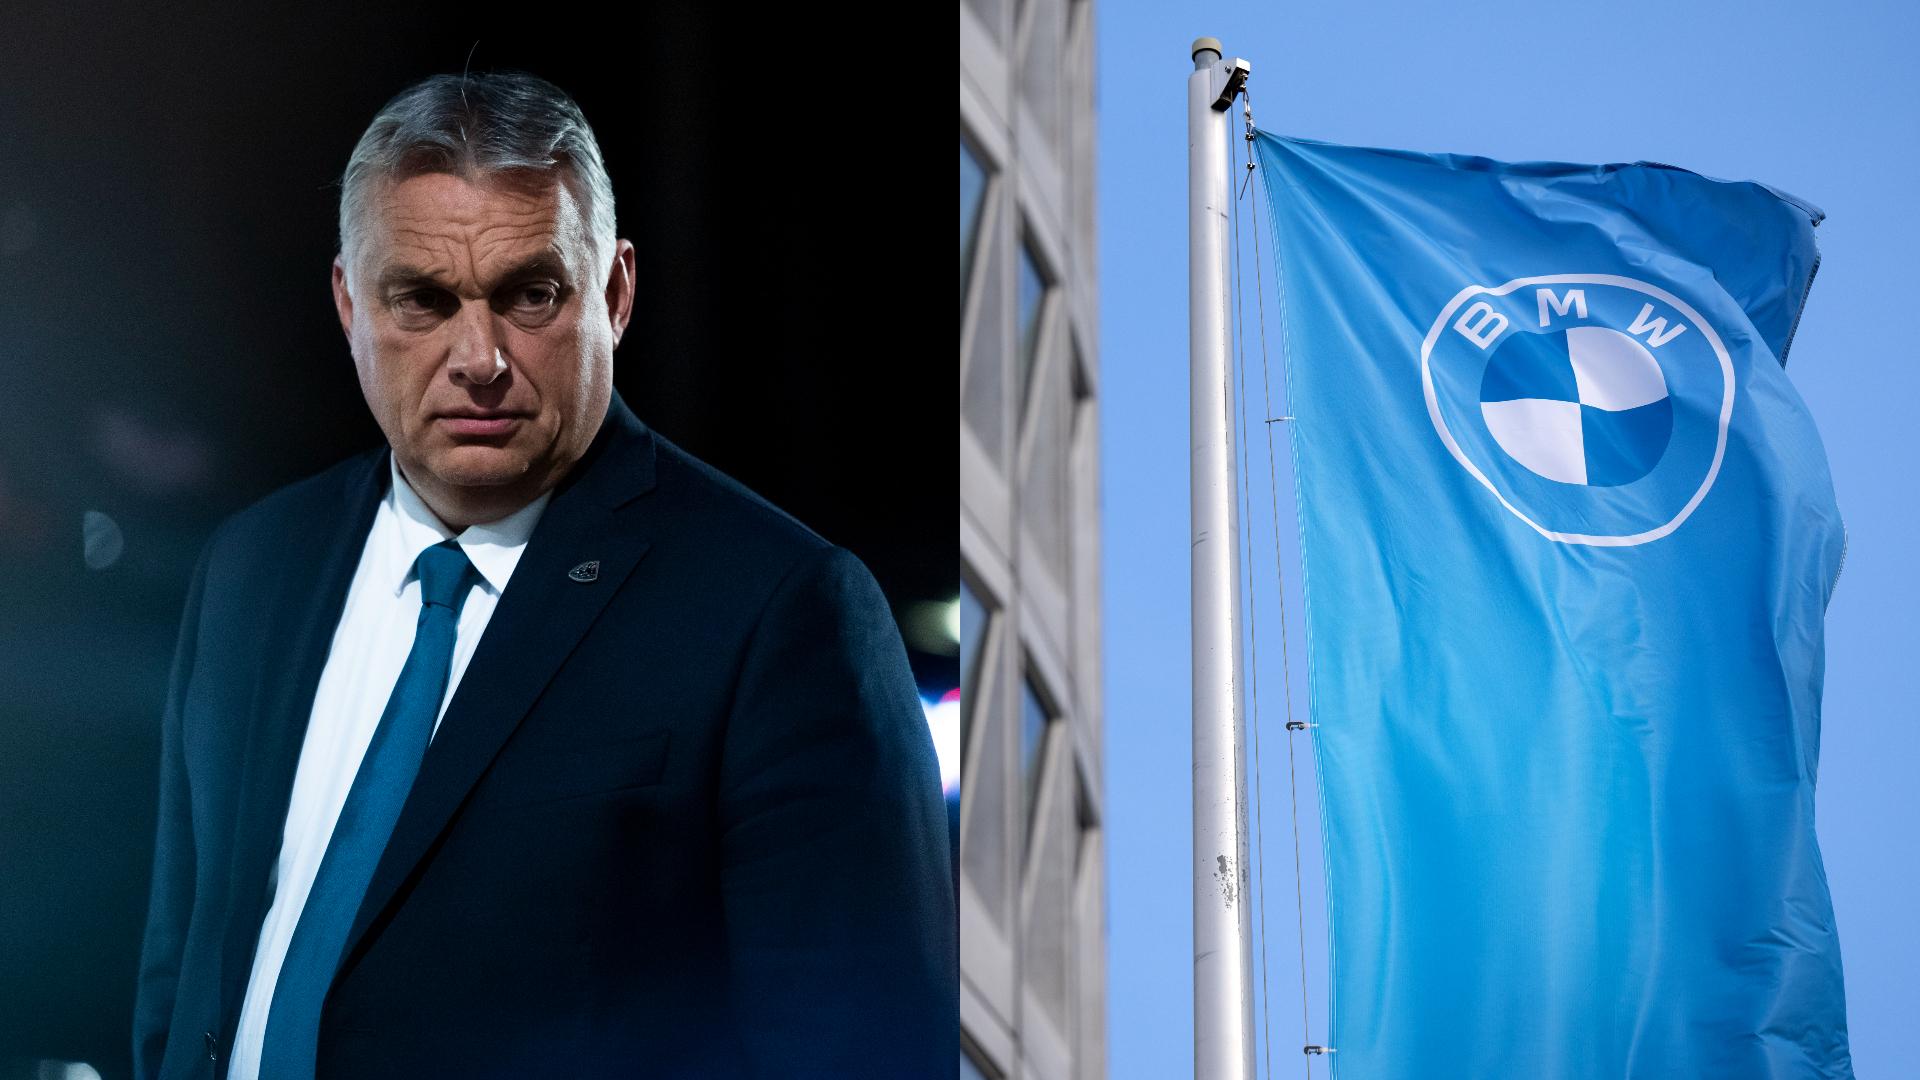 Súboj o piatu slovenskú automobilku vyhral Orbán. Teraz európske špičky vyzývajú BMW, aby odišlo do Rumunska